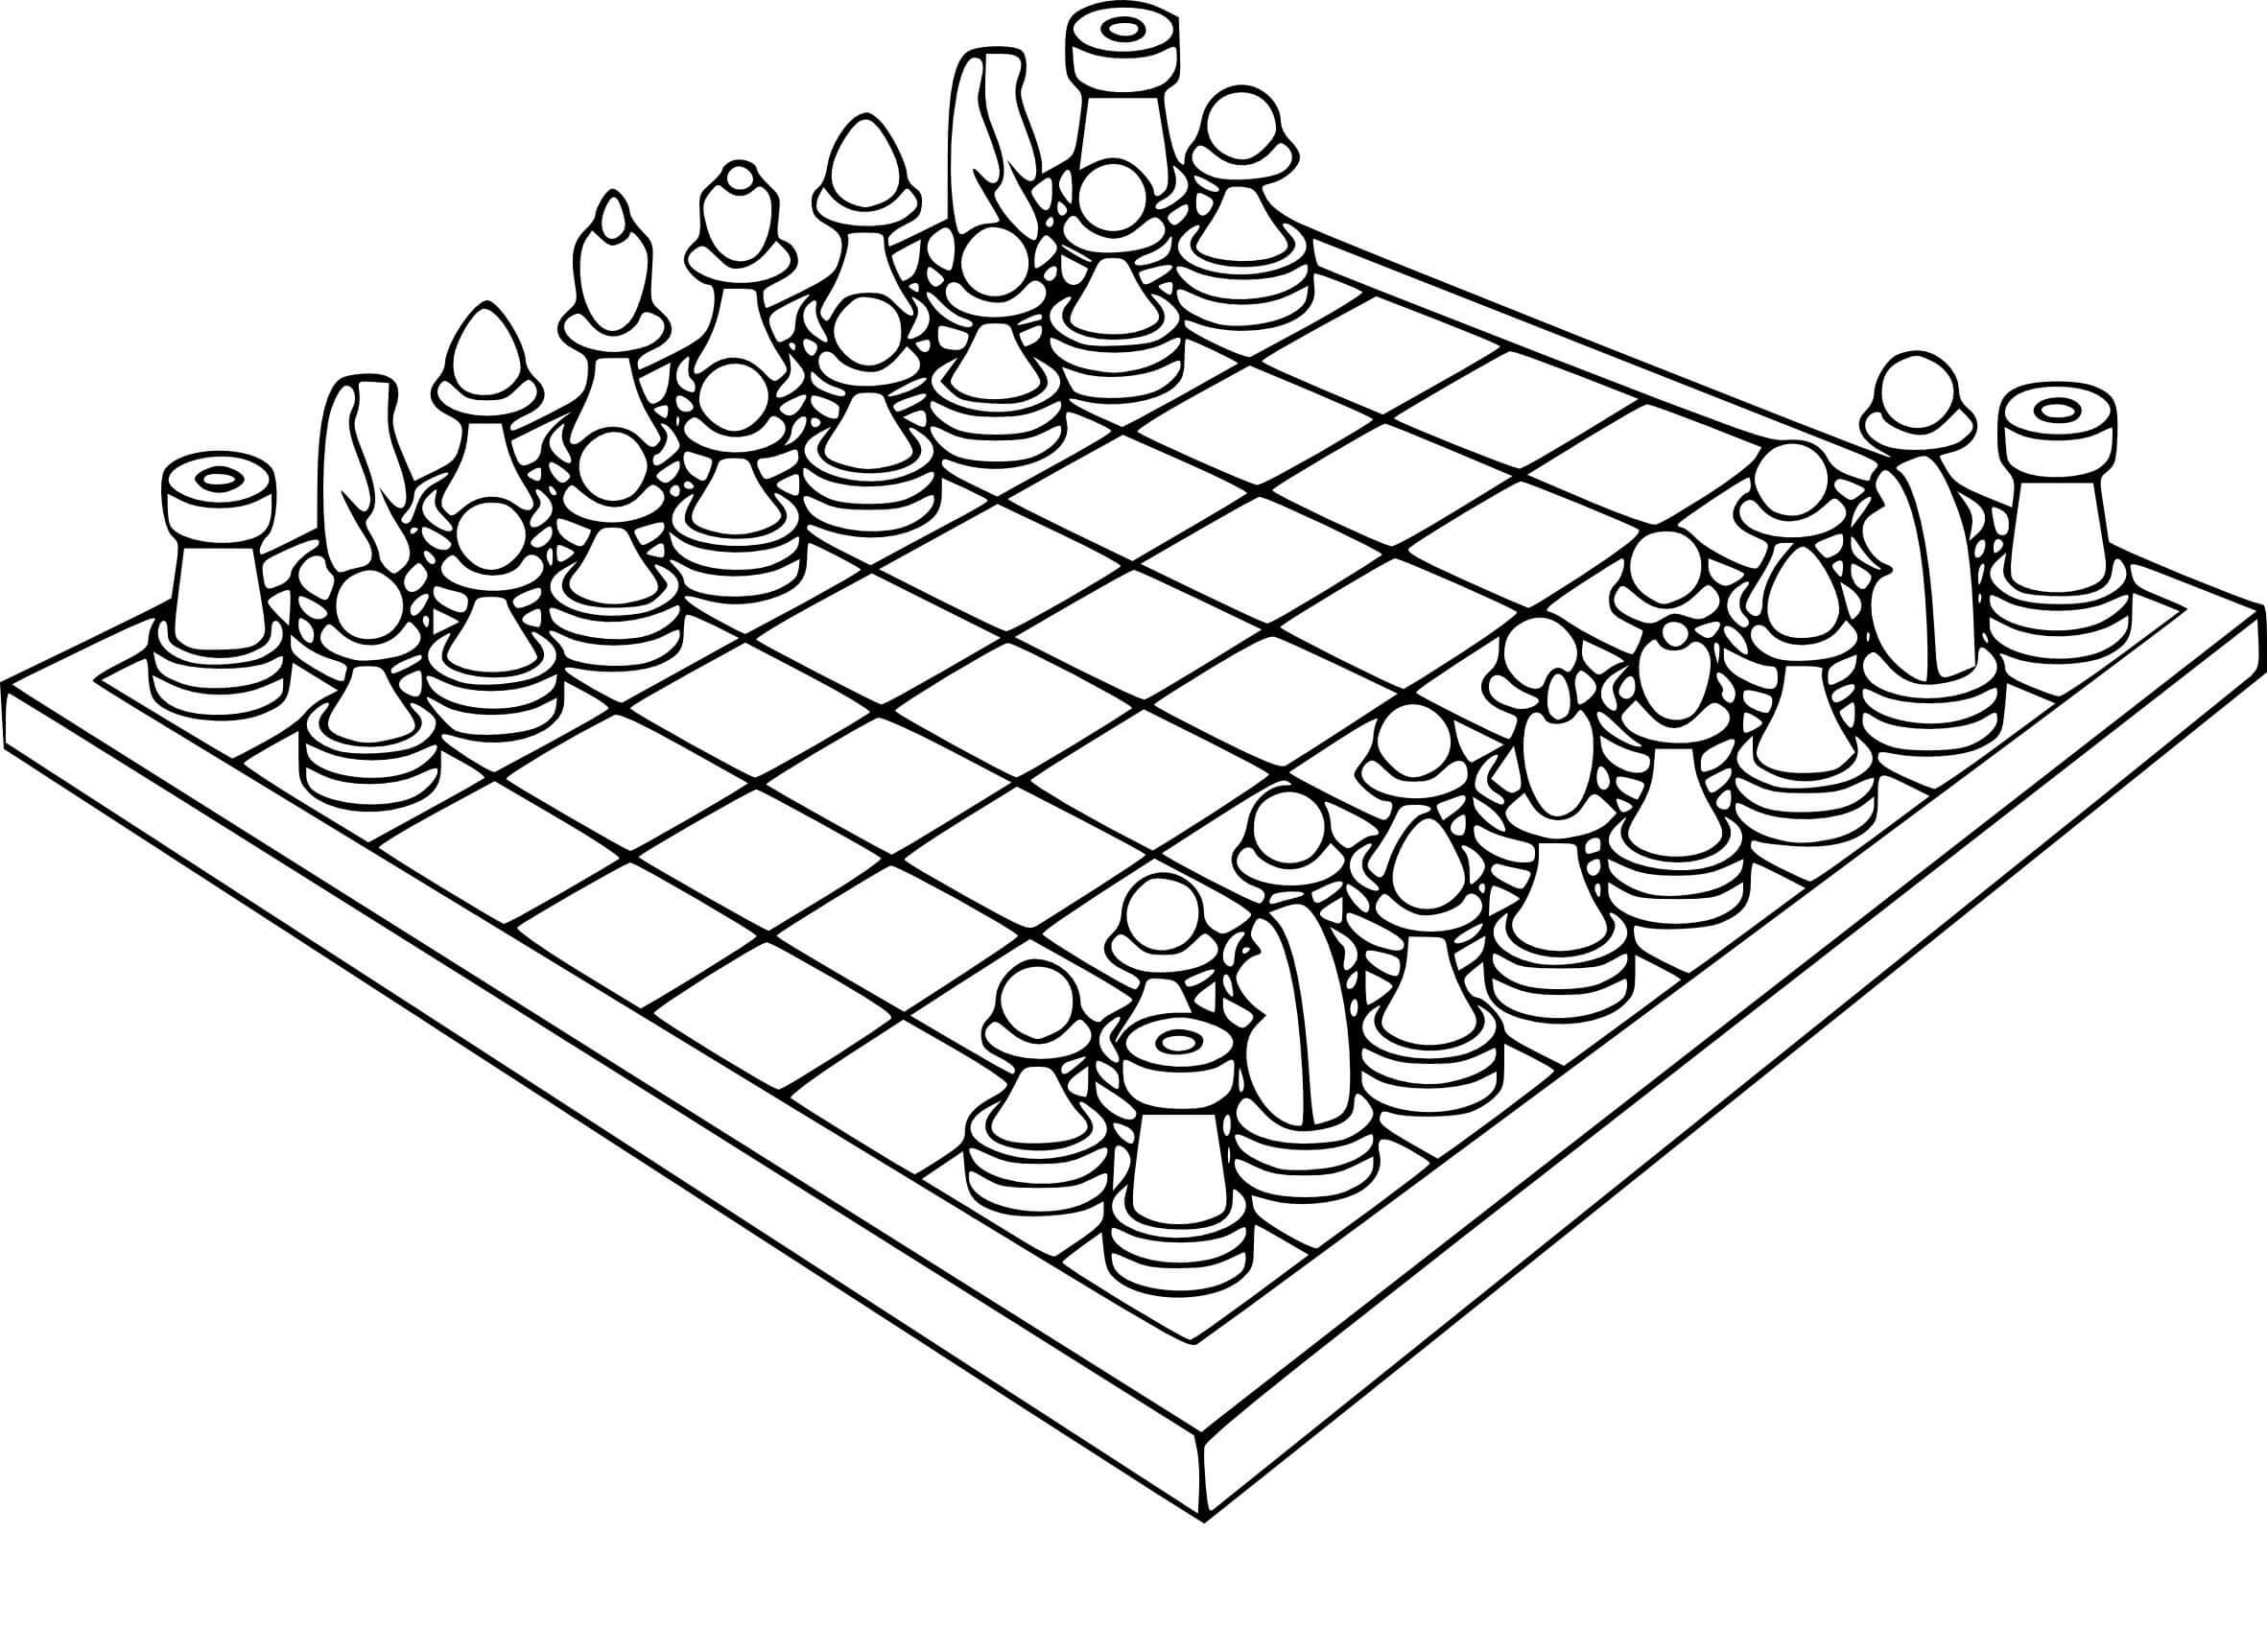 Tabuleiro de Xadrez para colorir